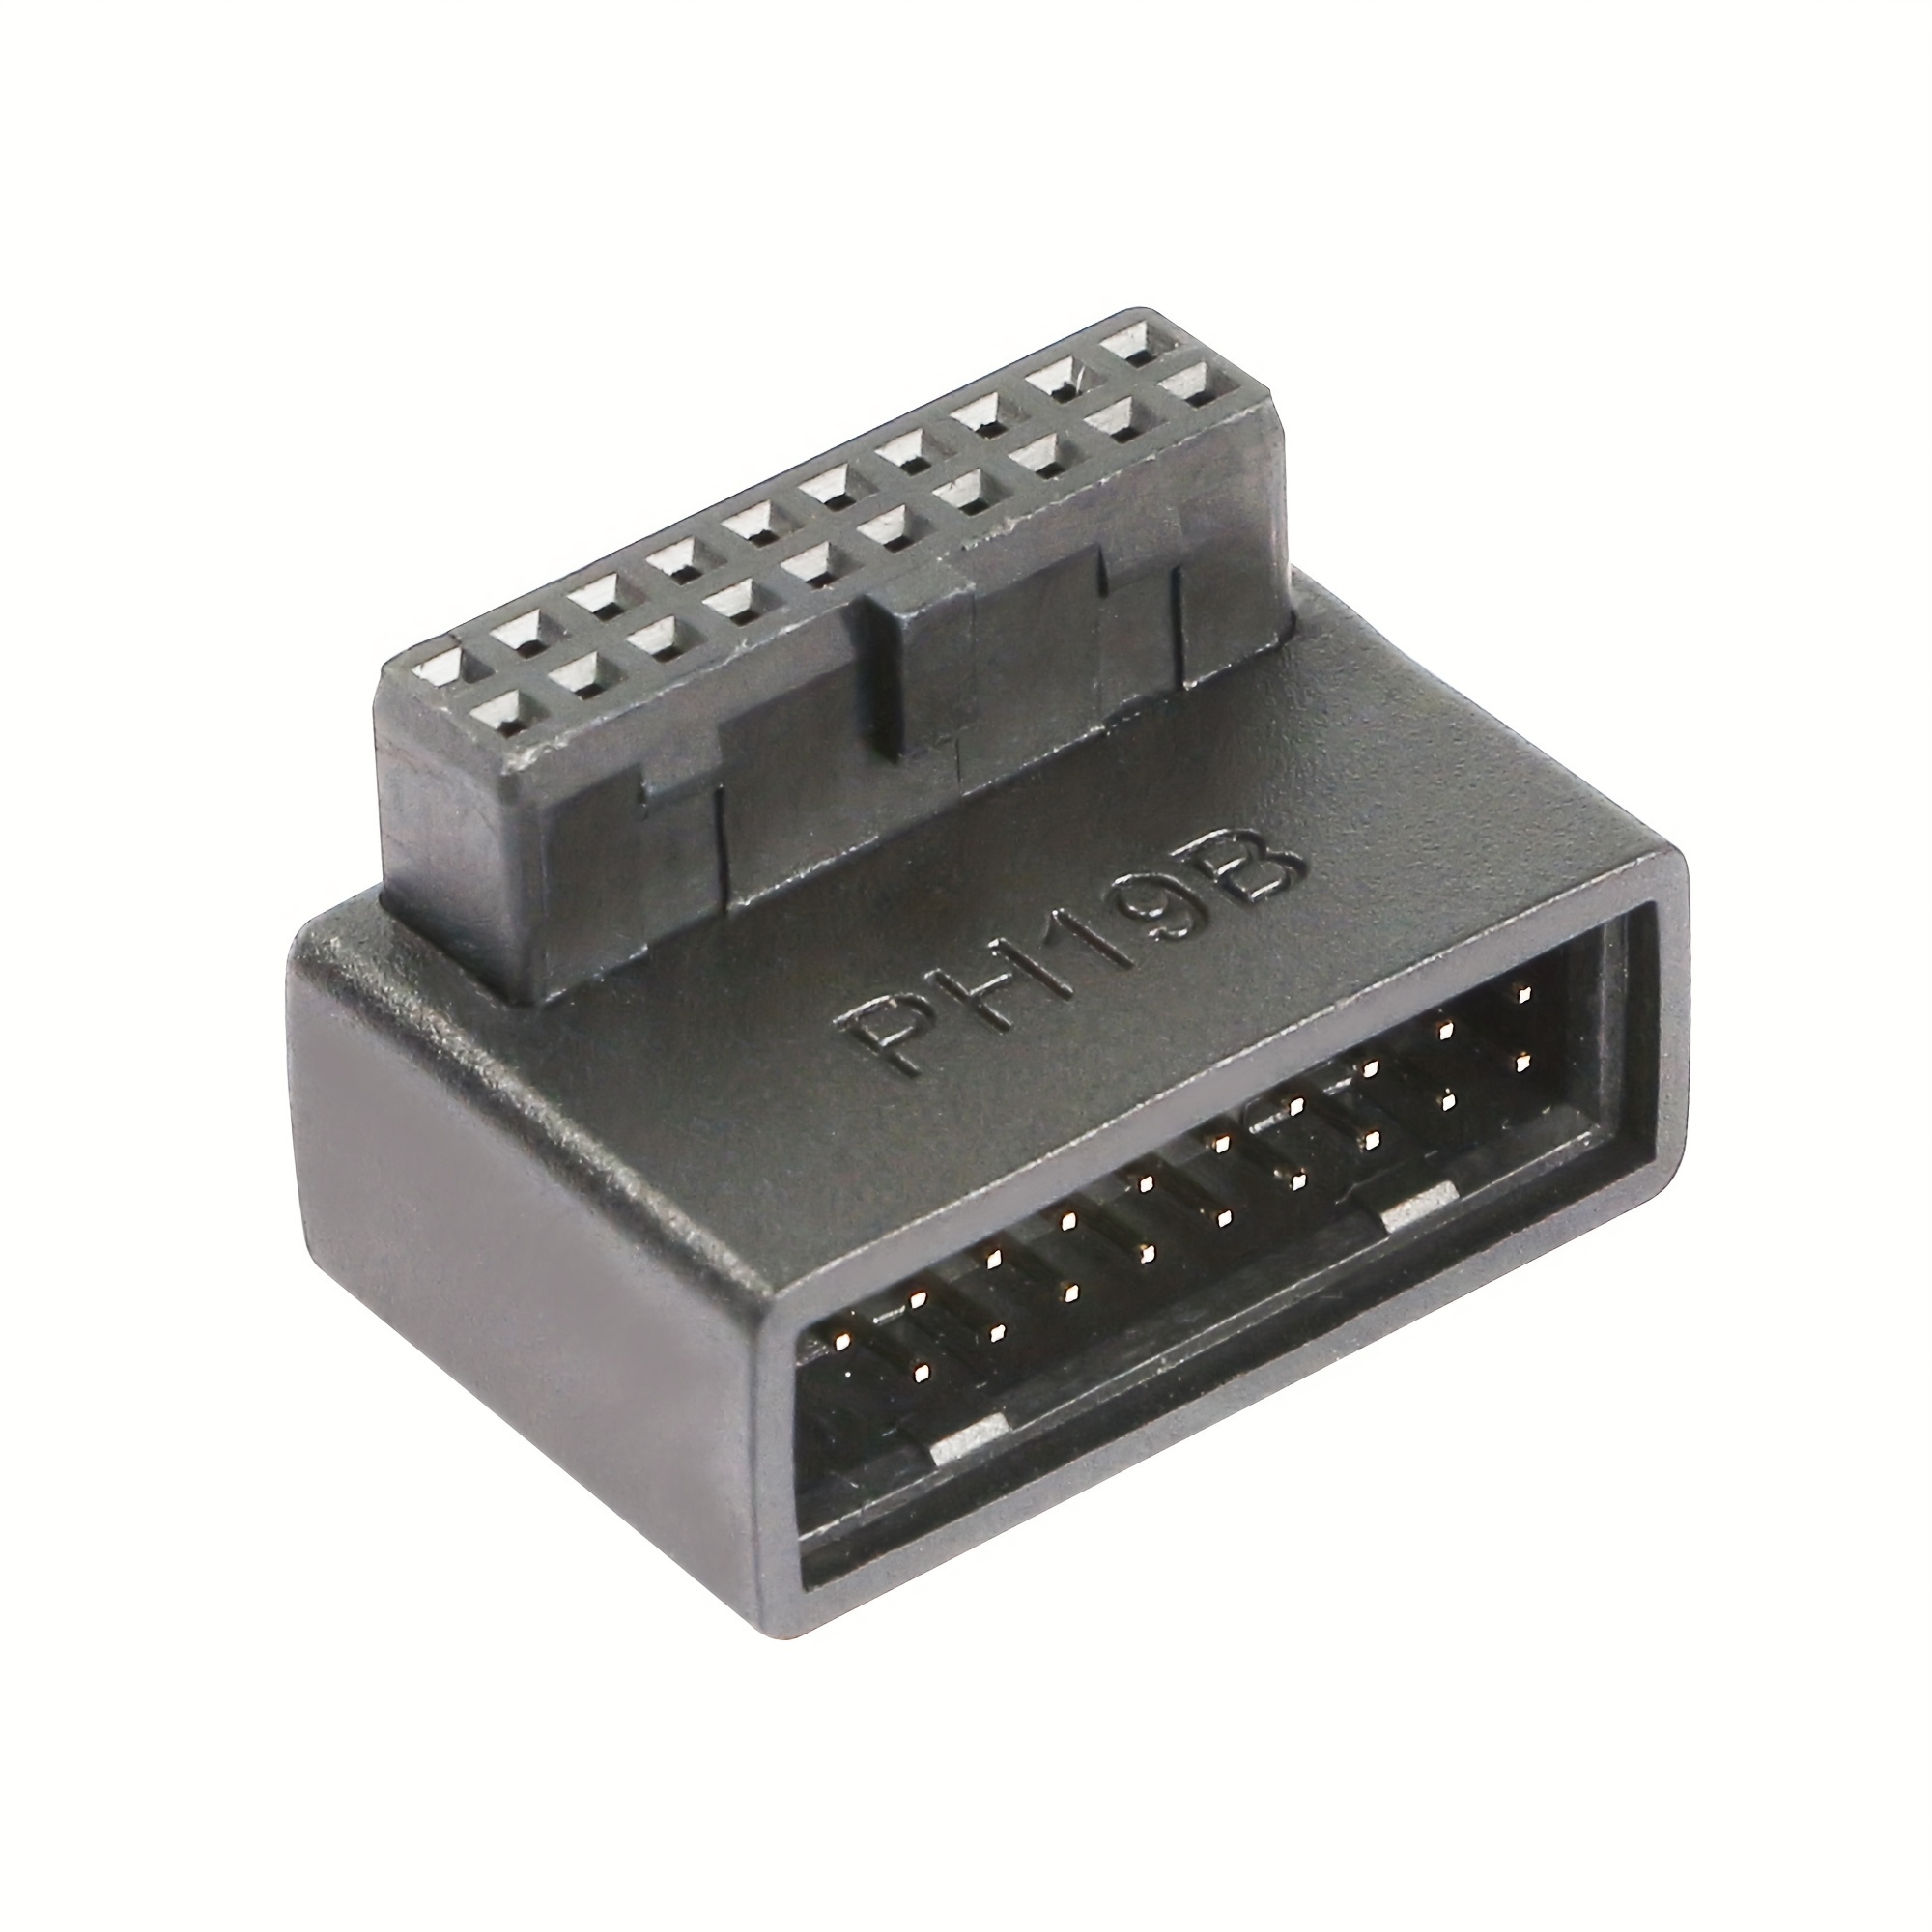 Kurze Superspeed USB 3.0 Stecker auf Buchse Verlängerungskabel, 90 Grad  Adapter Anschluss, links und Rig